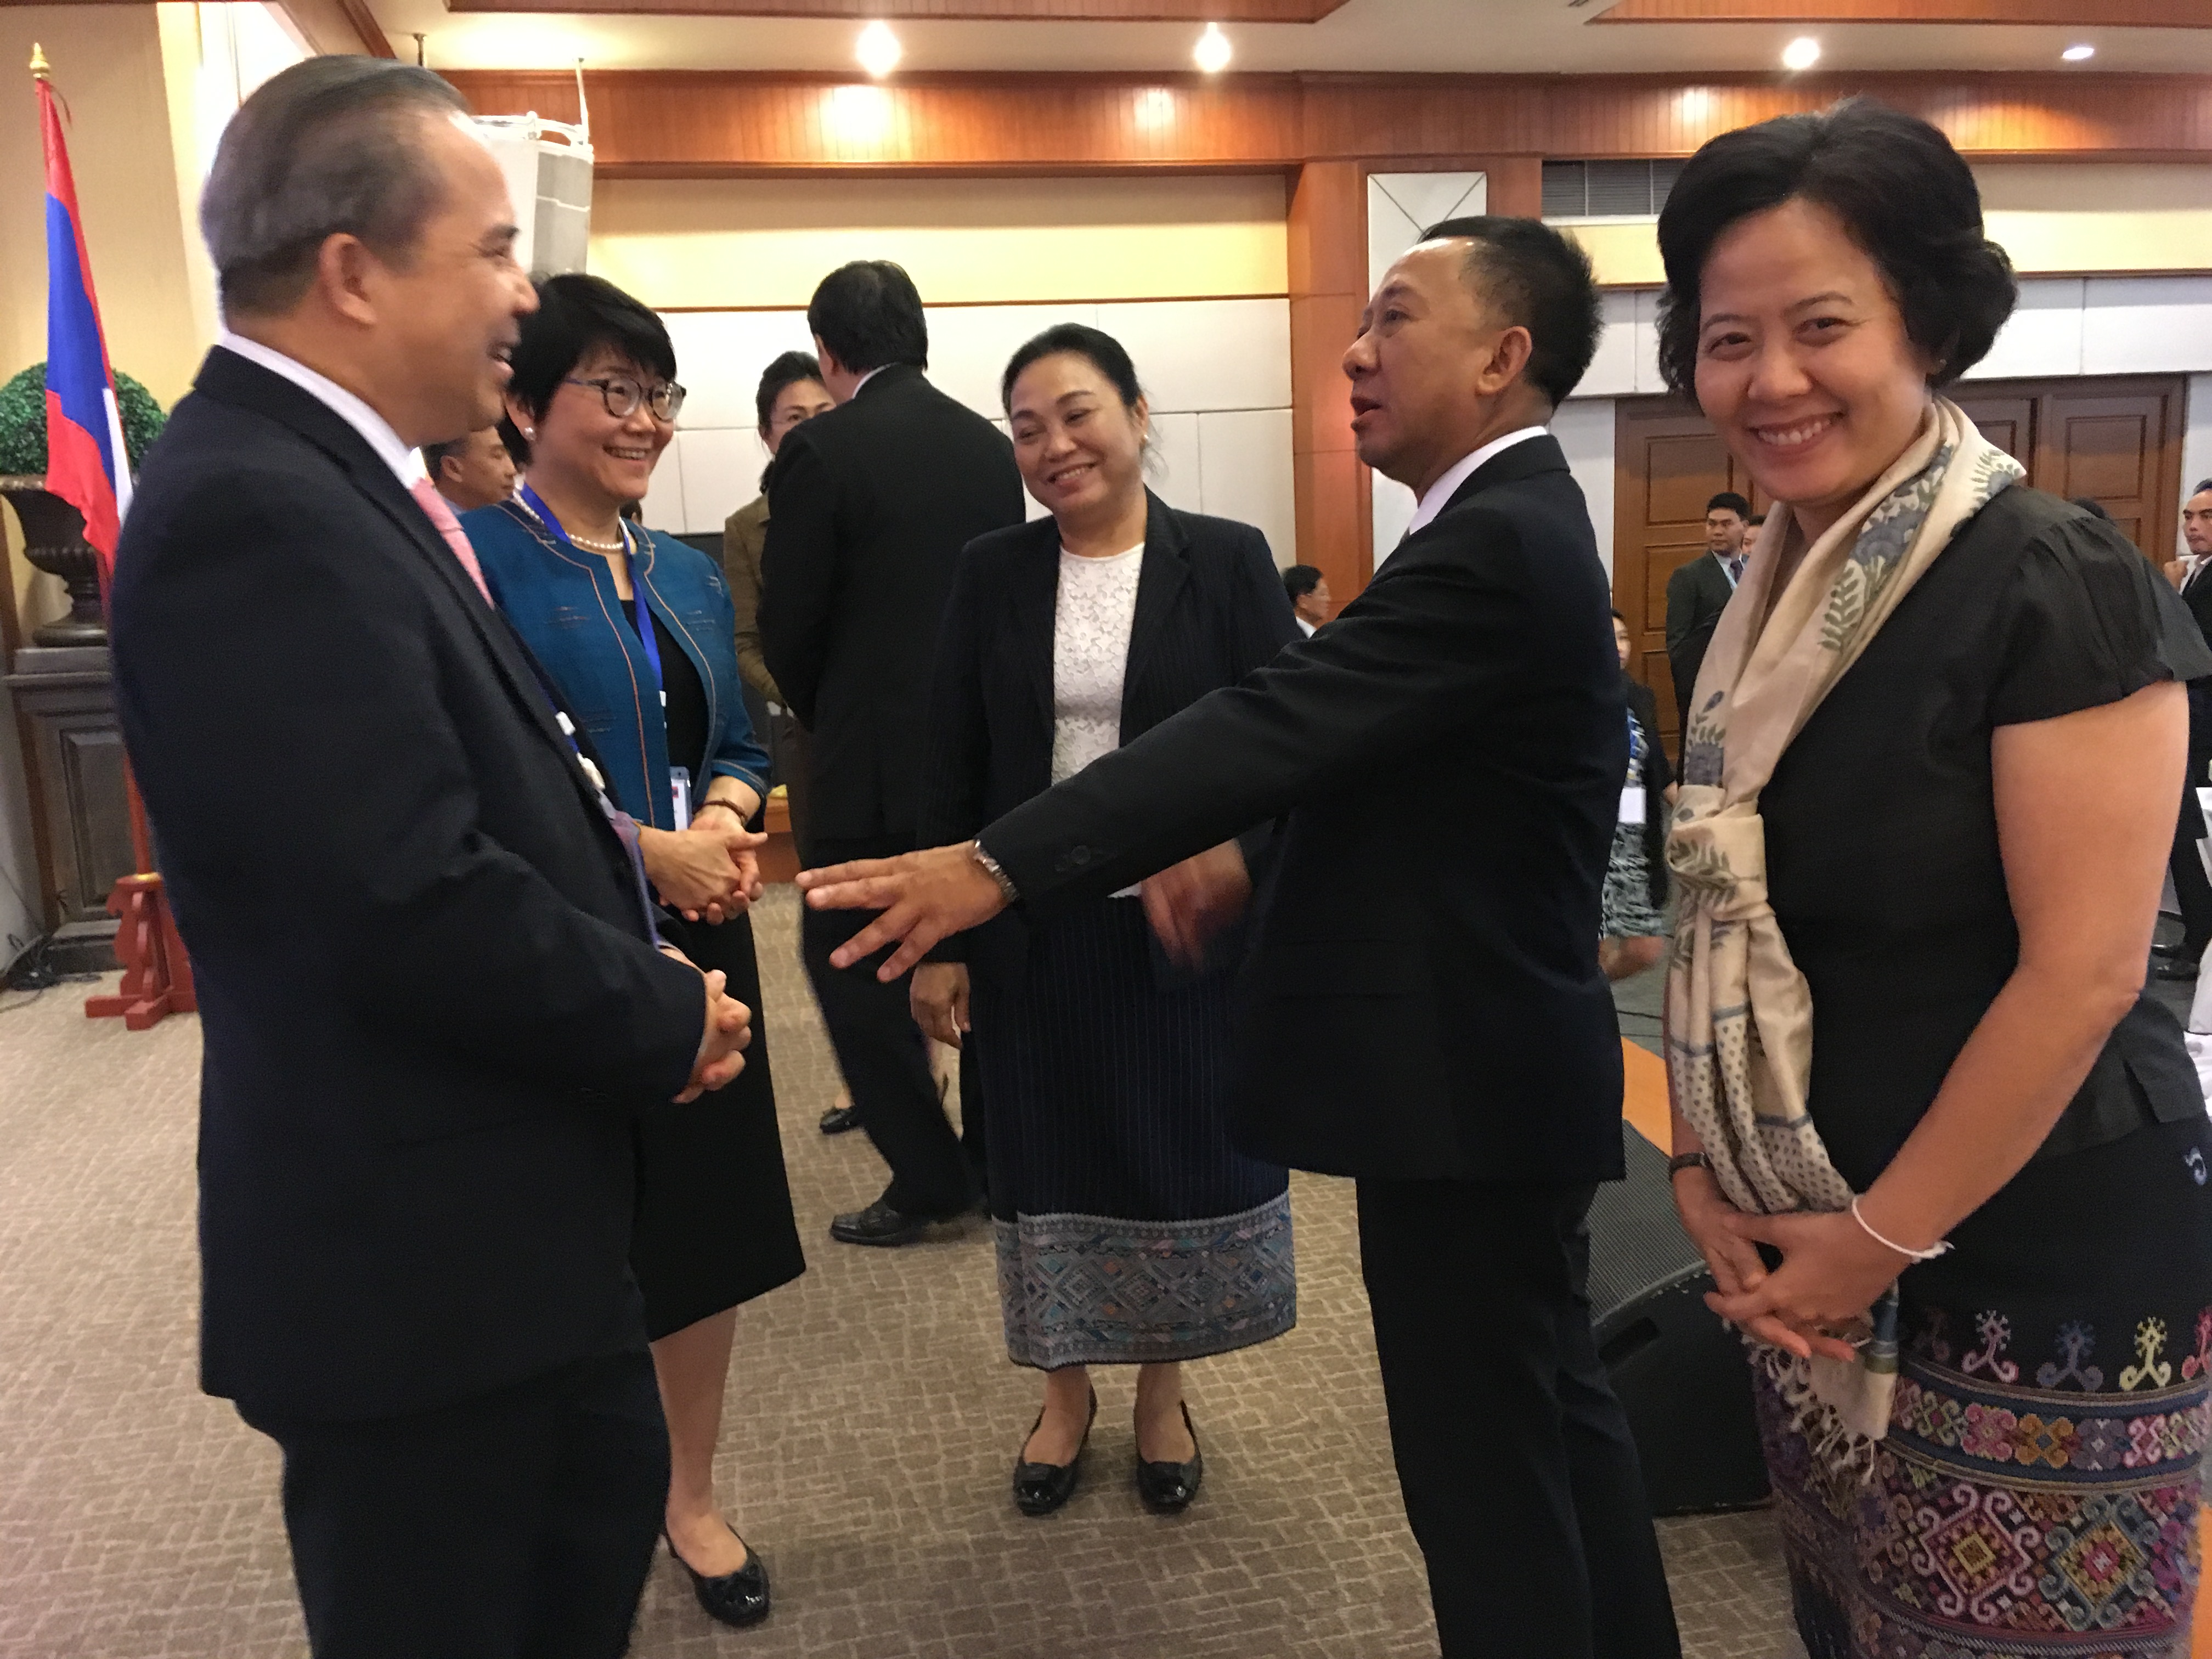 รายงานการเดินทางไปราชการ ณ สาธารณรัฐประชาธิปไตยประชาชนลาว ระหว่างวันที่ 31 มกราคม – 3 กุมภาพันธ์ 2561 โครงการประชุมคณะกรรมาธิการความร่วมมือไทย – ลาว ครั้งที่ 21